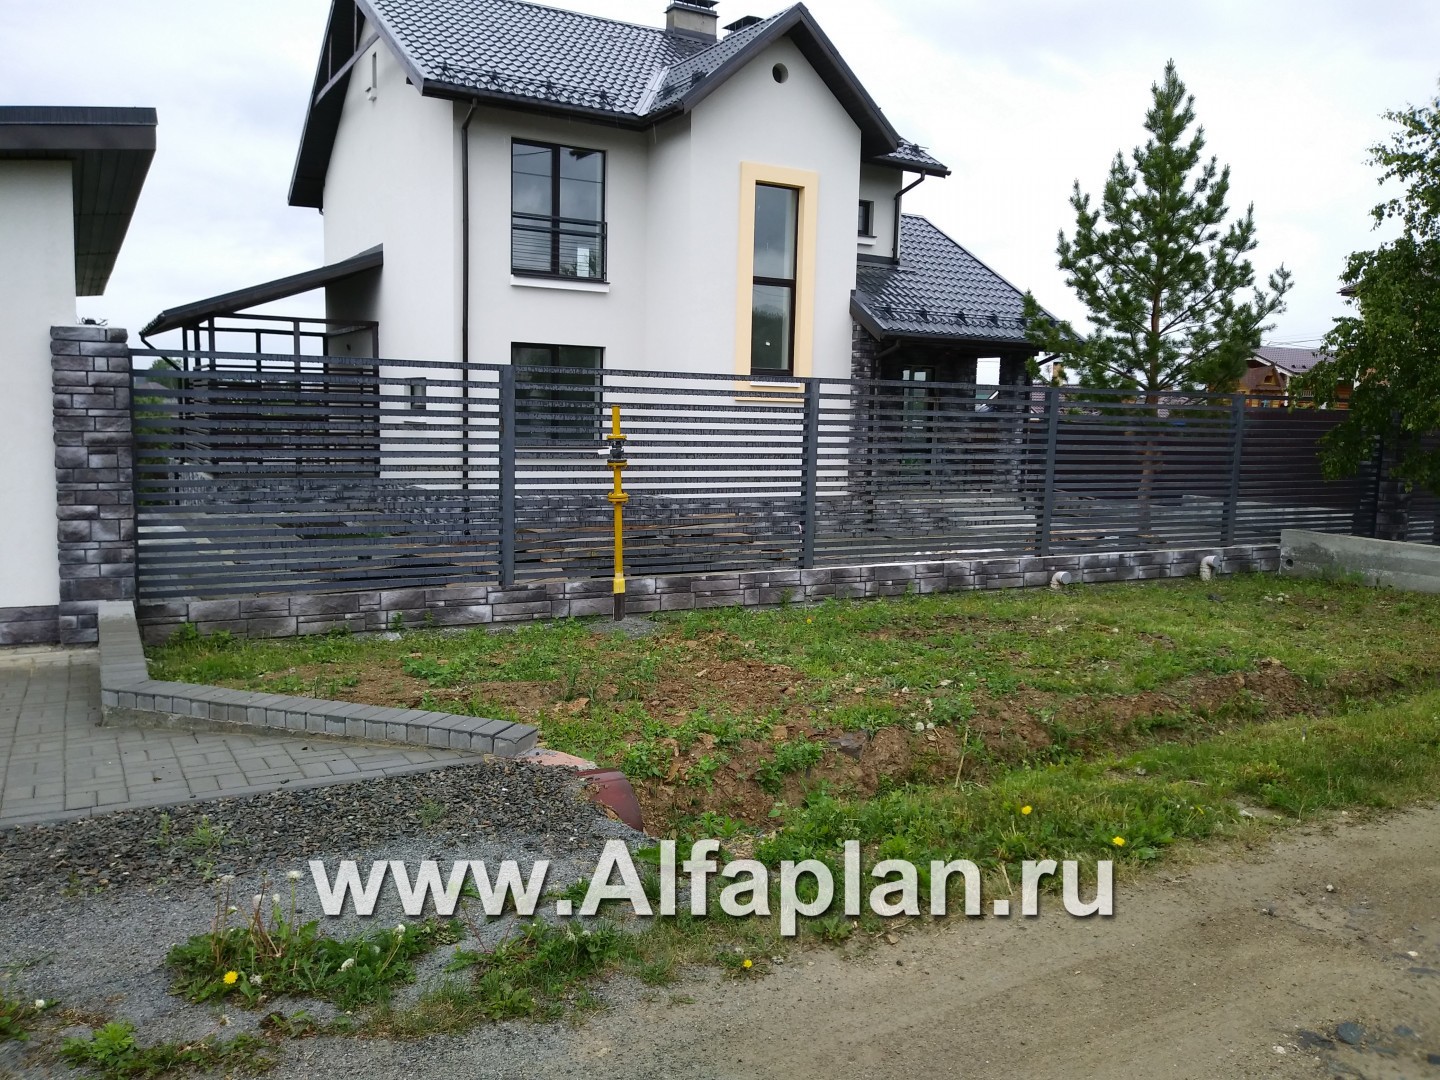 Проекты домов Альфаплан - «Скандинавия» - современный дом с удобным планом - дополнительное изображение №1